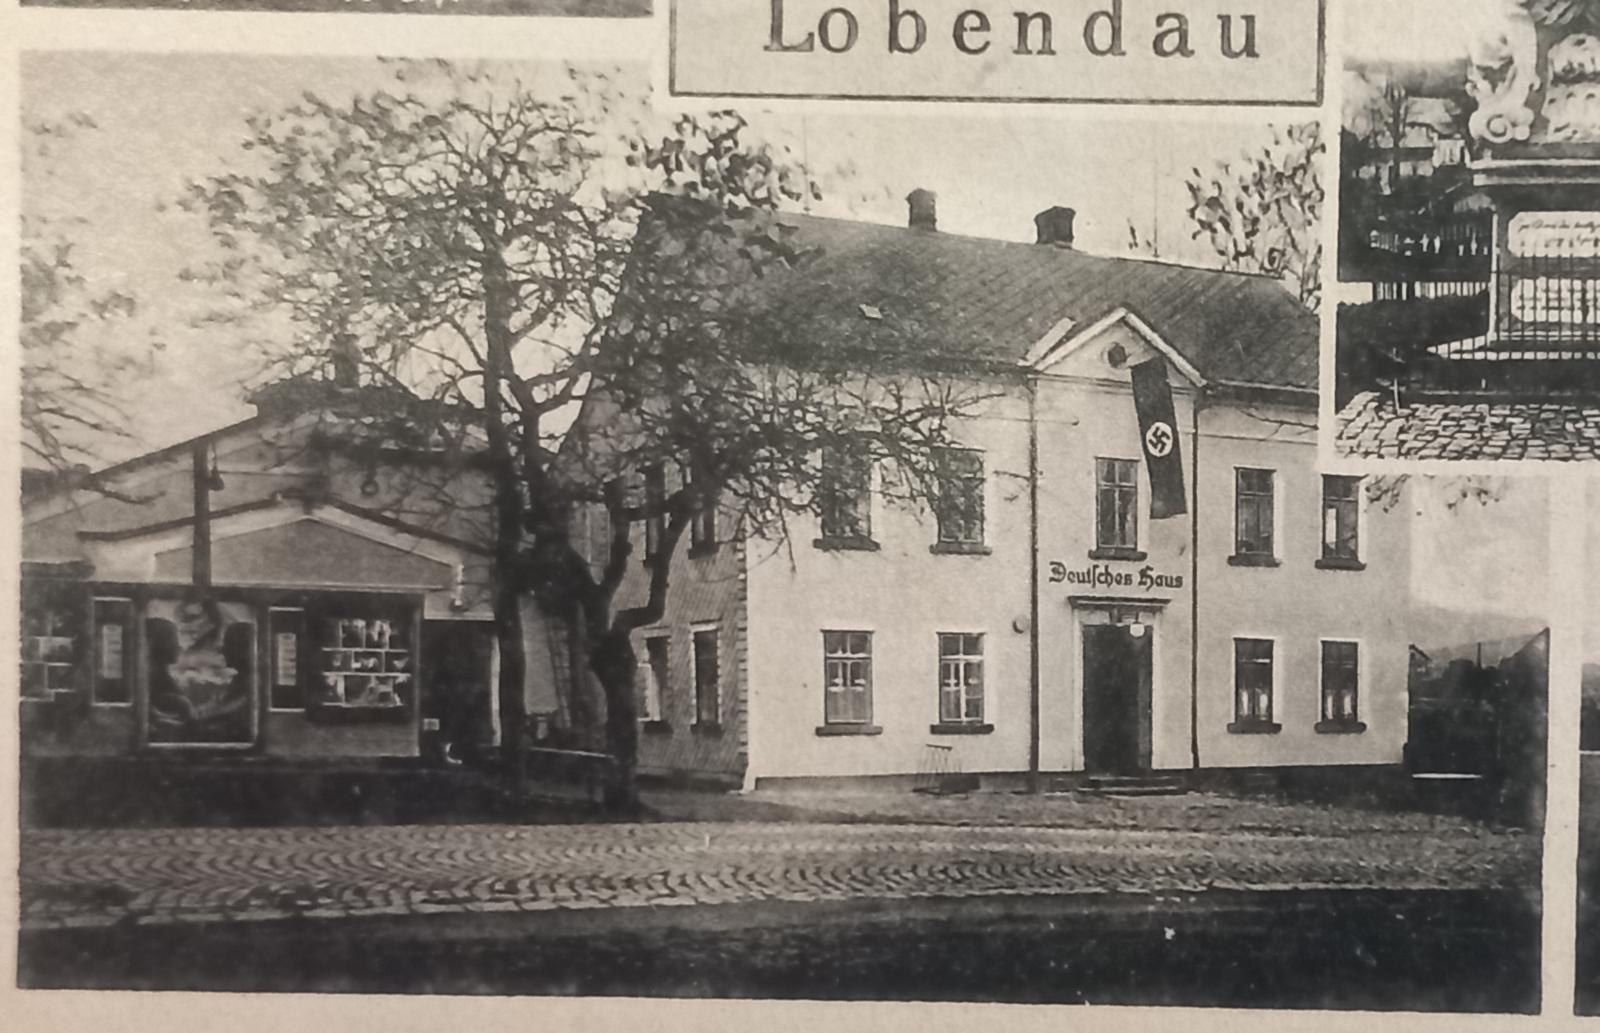 Lobendava - Lobendau - nazi vlajka Deutsche haus - propaganda - 1939 - Pohľadnice miestopis